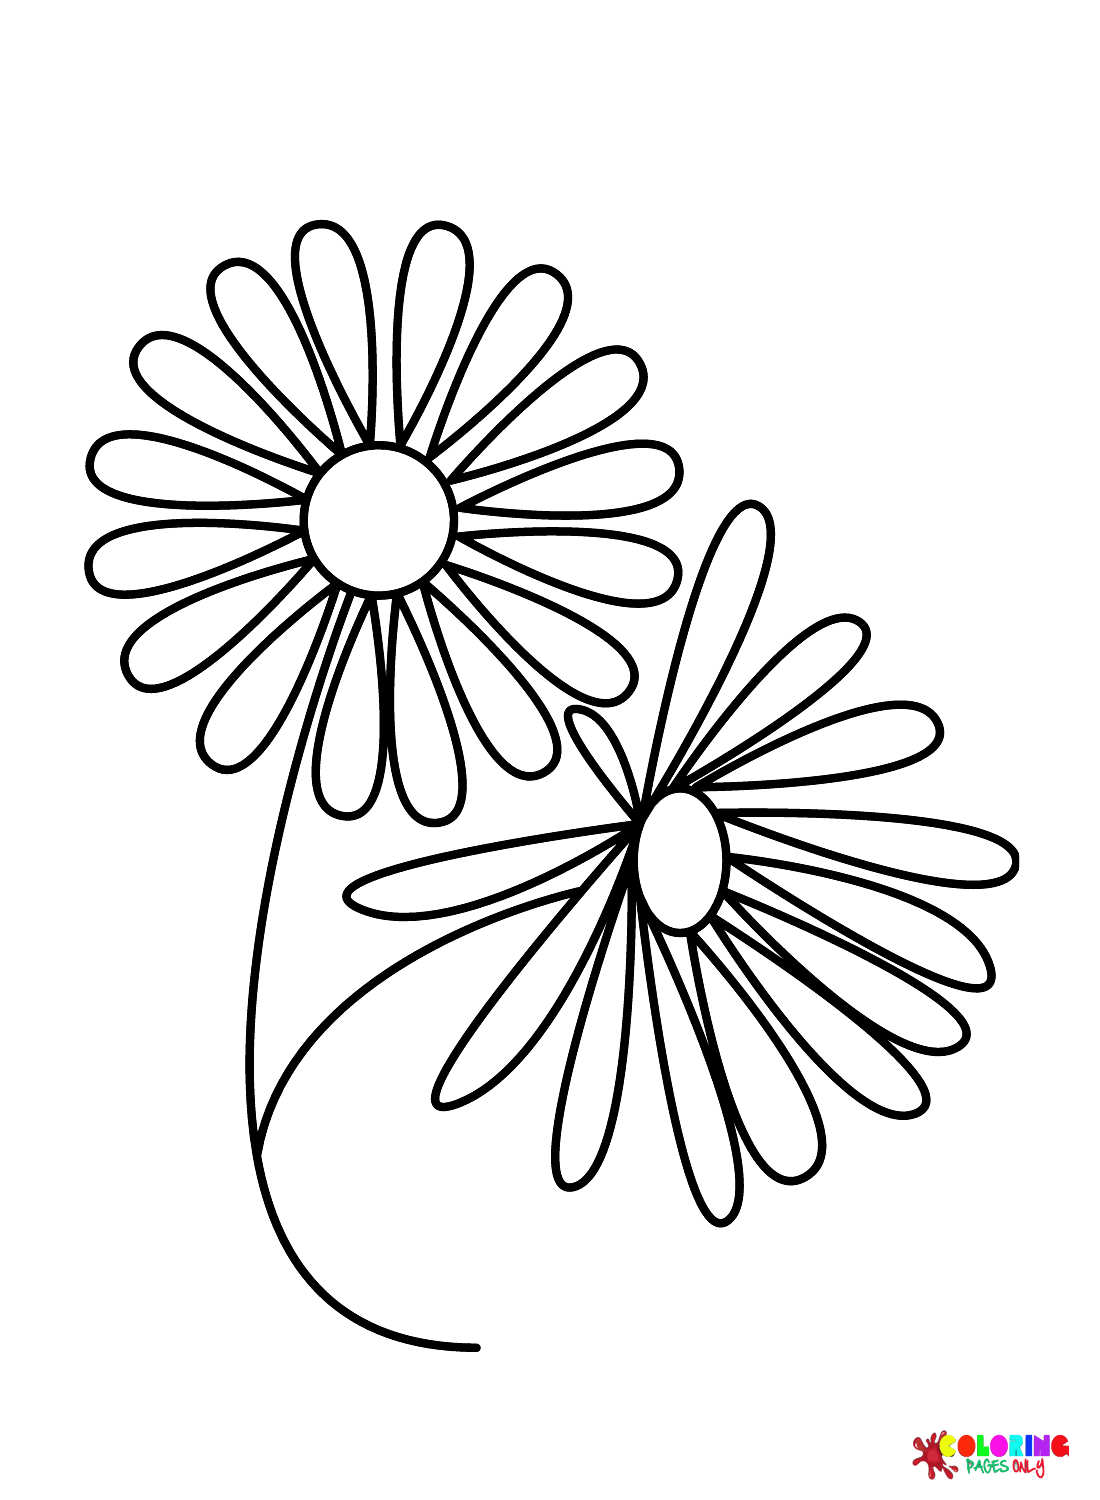 How To Draw Daisy Flower  Como Dibujar Una Flor  Margarita  YouTube   Flores para dibujar Como dibujar flores Margaritas flores